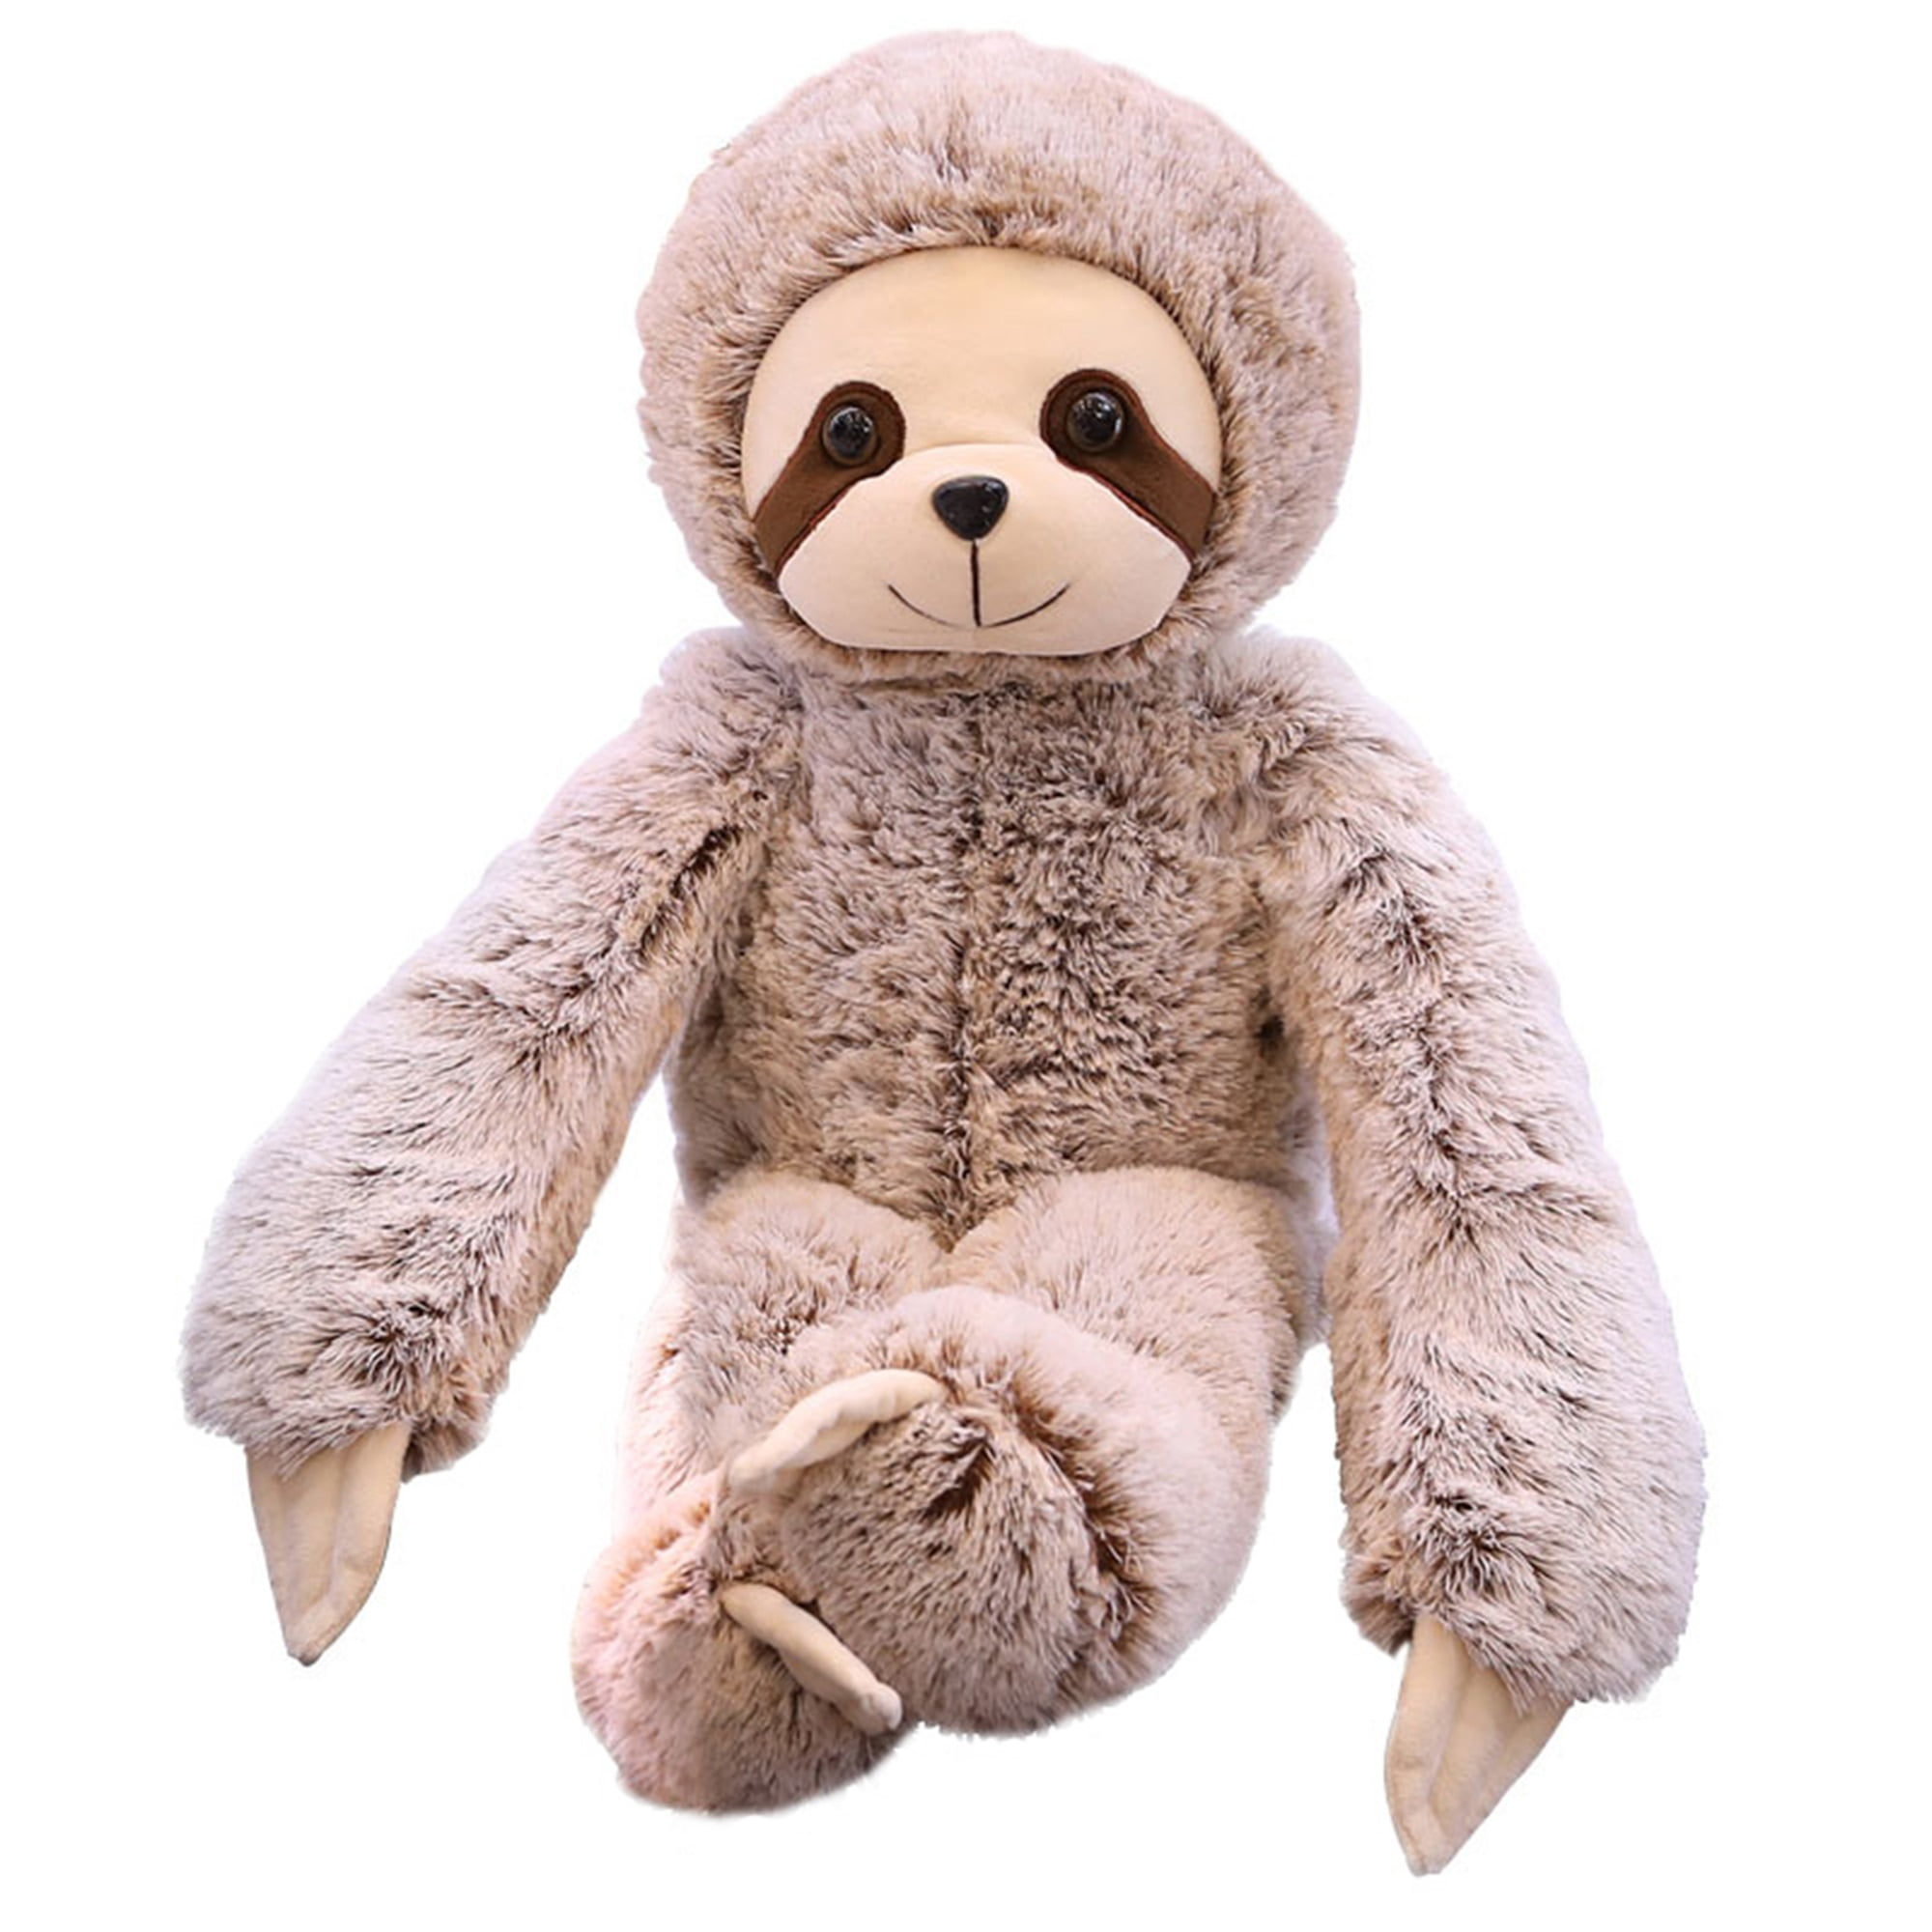 Simulation Animal Cuddly Three Toed Sloth Plush Toy Stuffed Doll Teddy 12'' Gift 